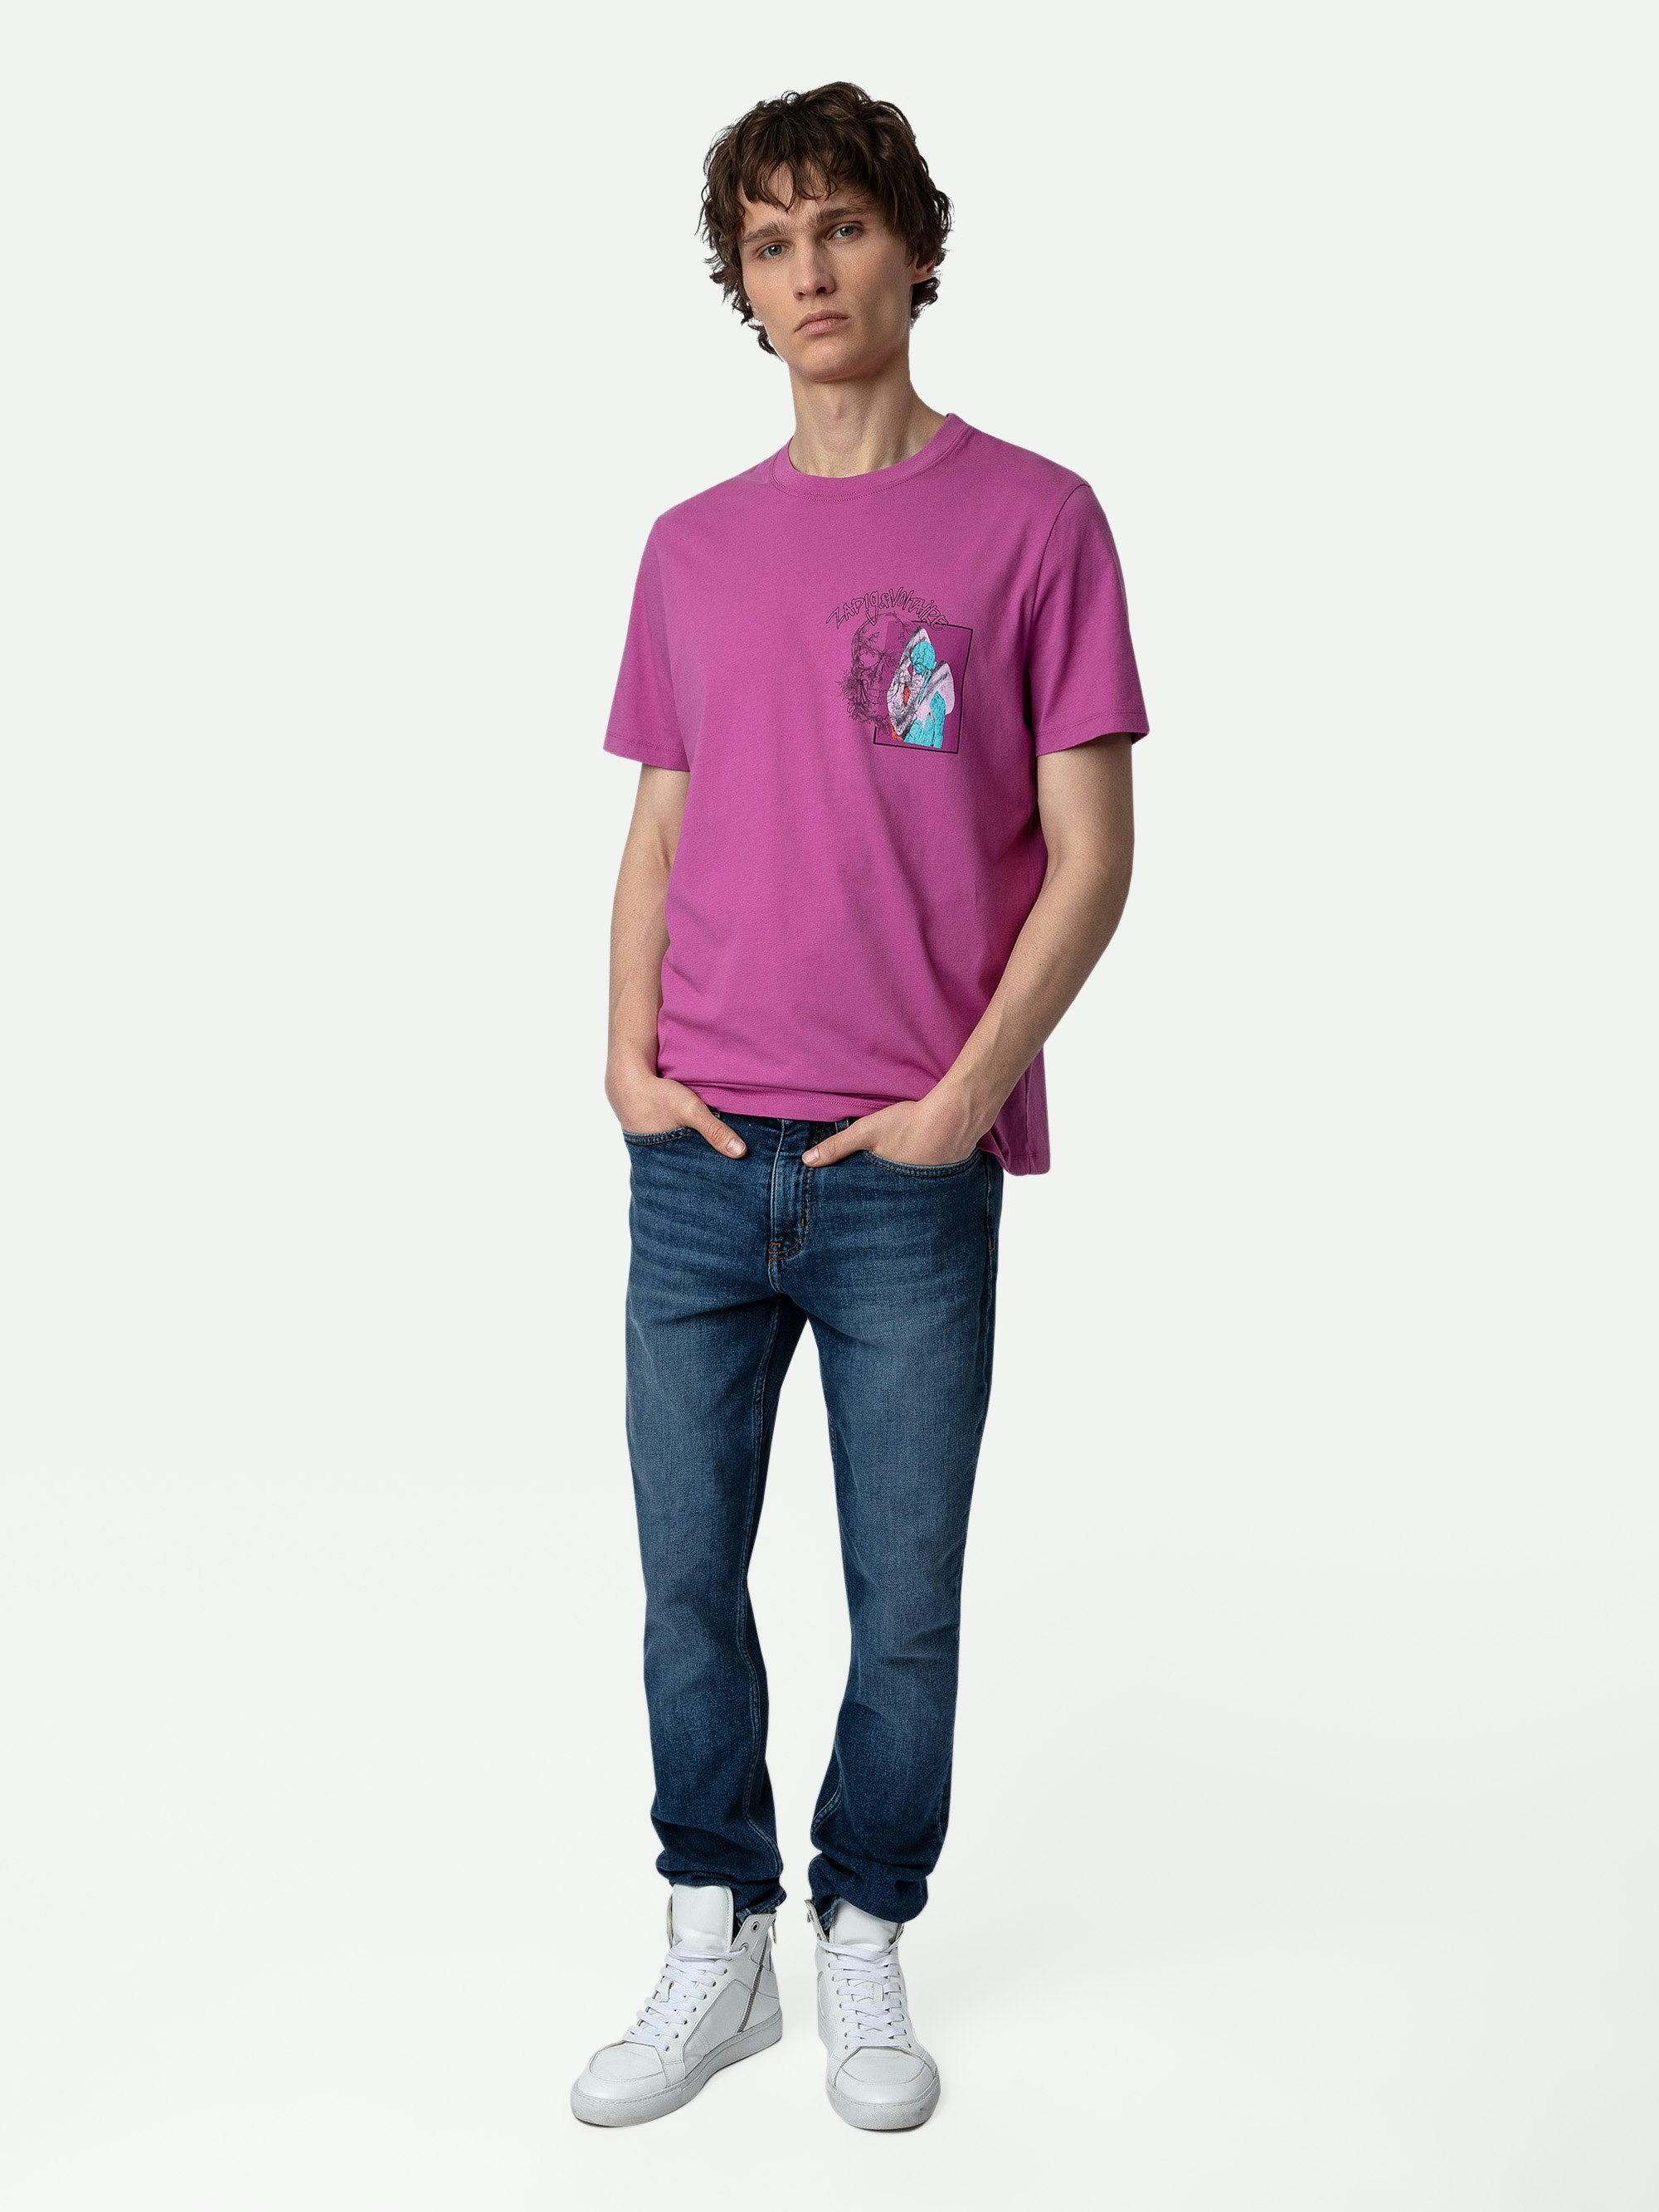 Camiseta Ted Estampado Fotográfico - Camiseta fucsia de algodón con estampado fotográfico Graffiti y calavera.